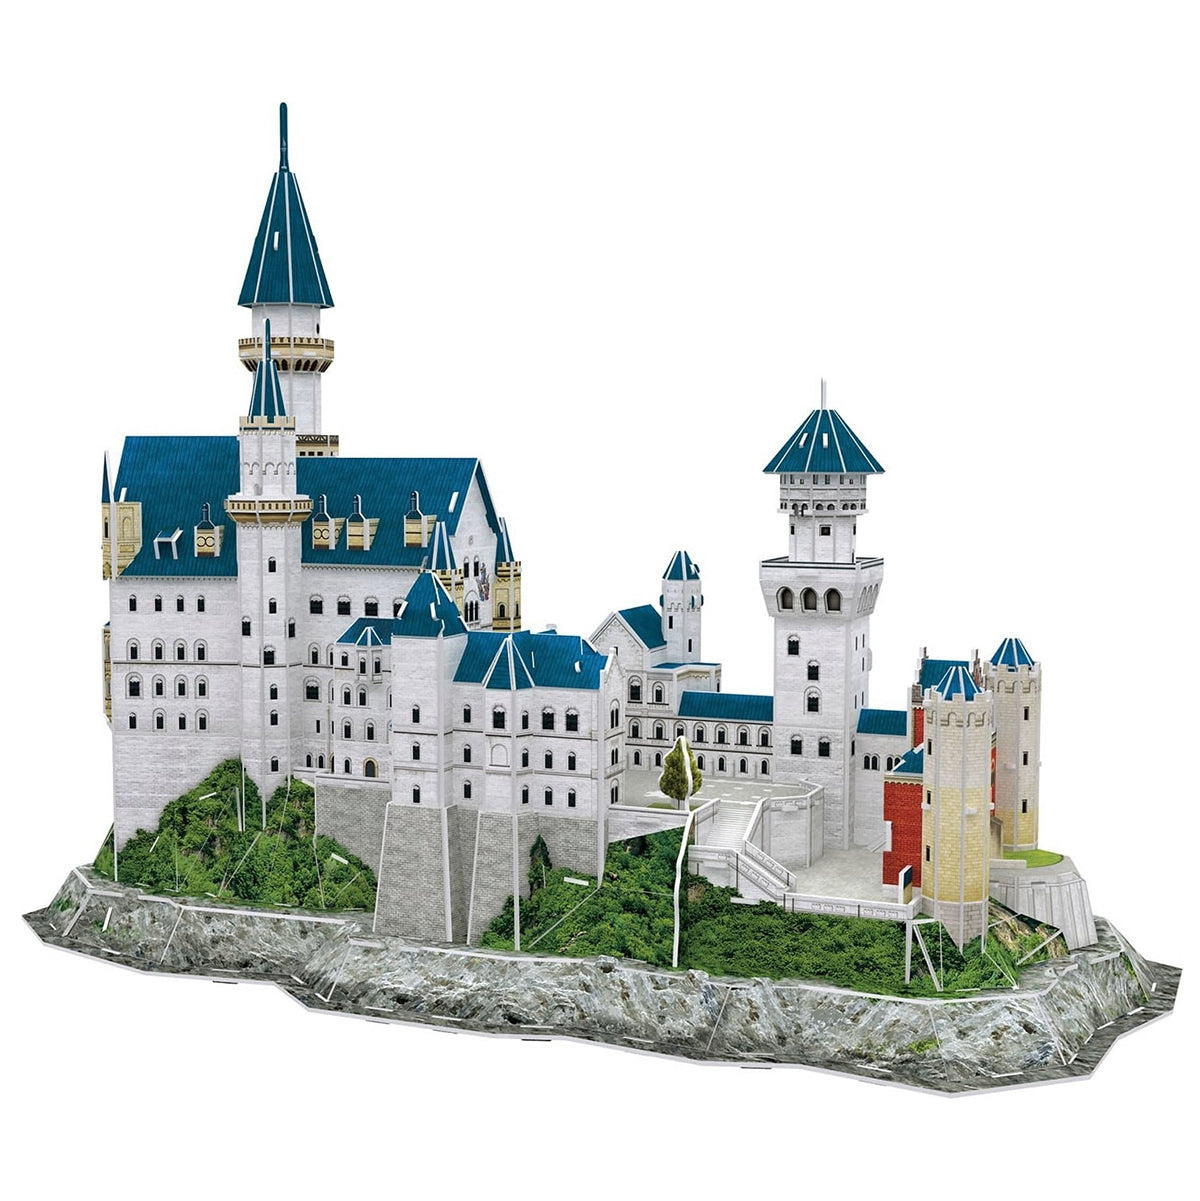 Revell - 3D Puzzle Neuschwnstein Castle